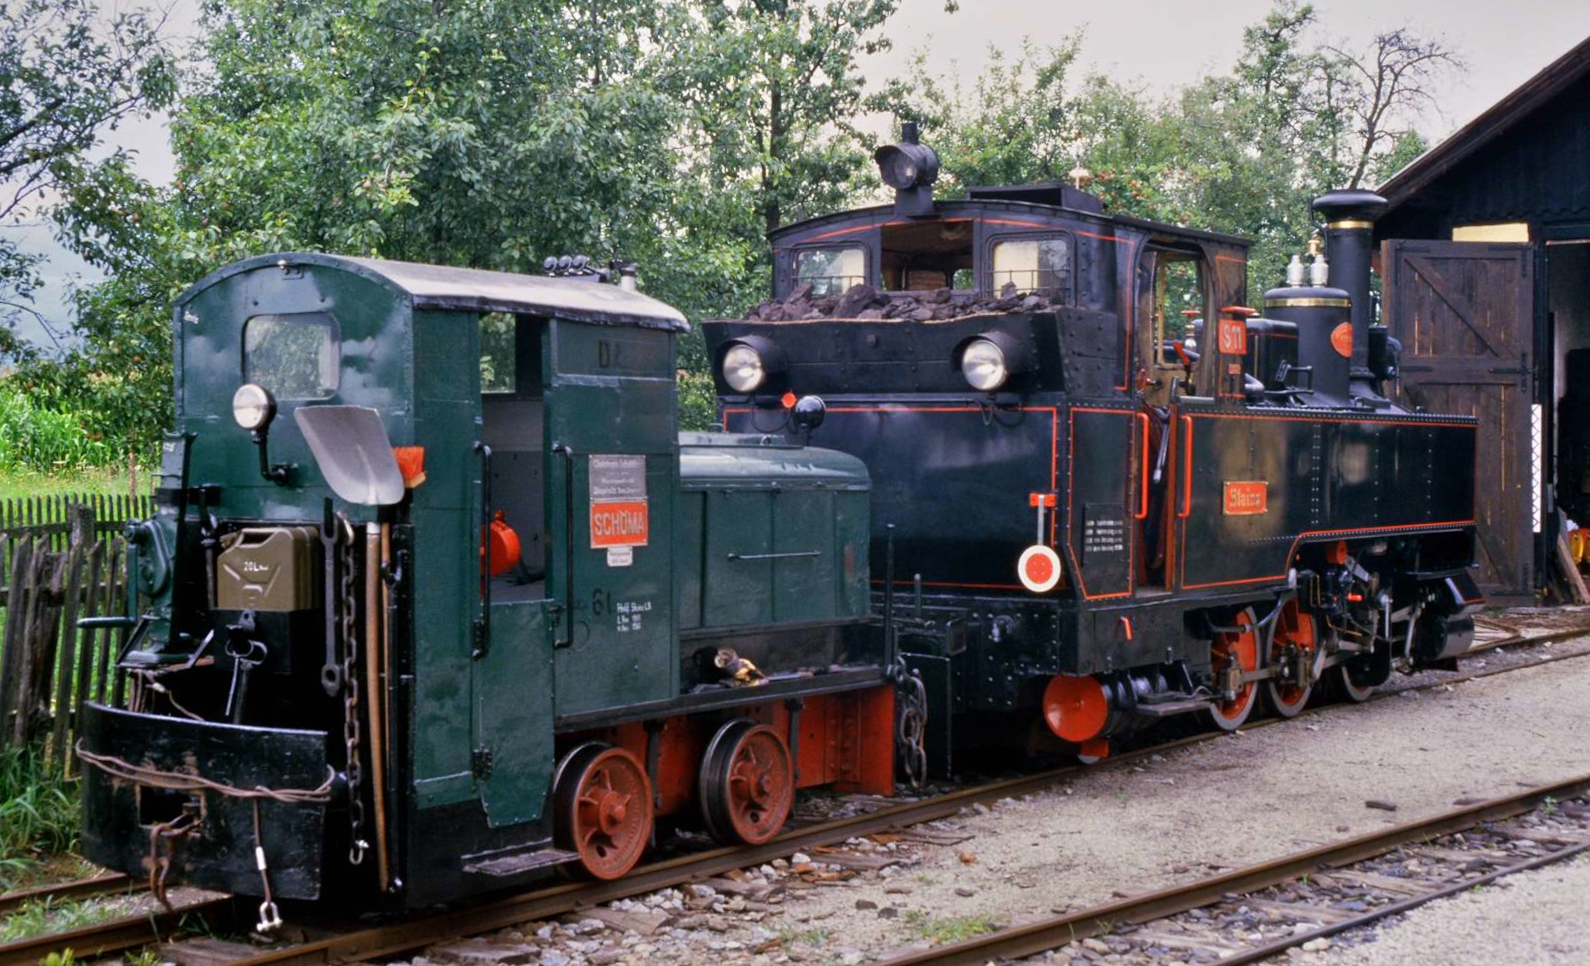 Das Foto entstand 1986 vor dem Bw der Stainzer Bahn. Die Feldbahnlok vorn zählt zum Typ LO 40 und wurde als Lok  D 2  bei der Stainzer Bahn geführt. Daneben findet sich  Dampflok S 11  Stainz .
